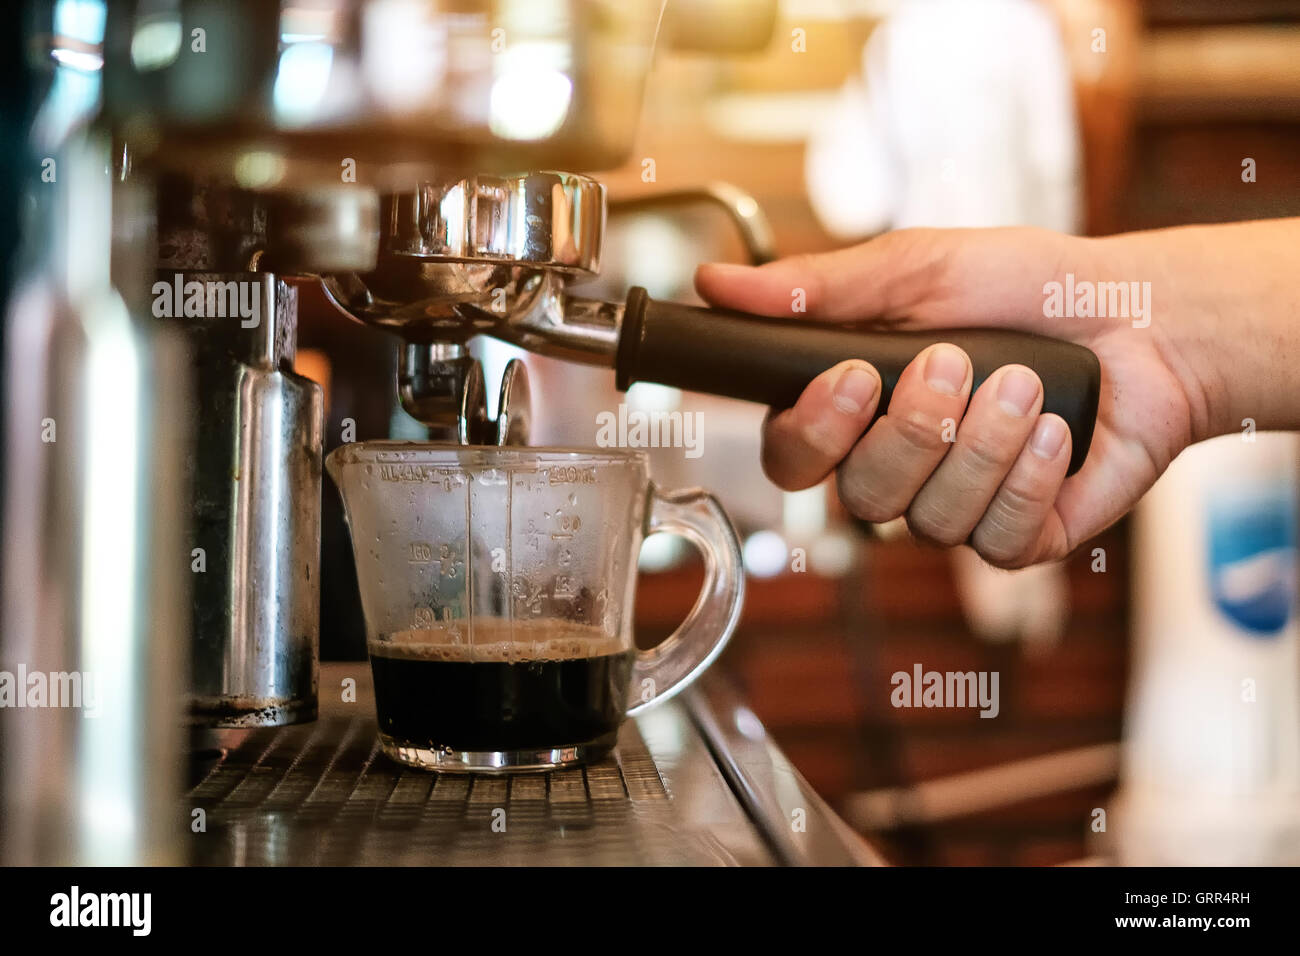 Tasse à expresso professionnel et verser du café dans une tasse en céramique Banque D'Images